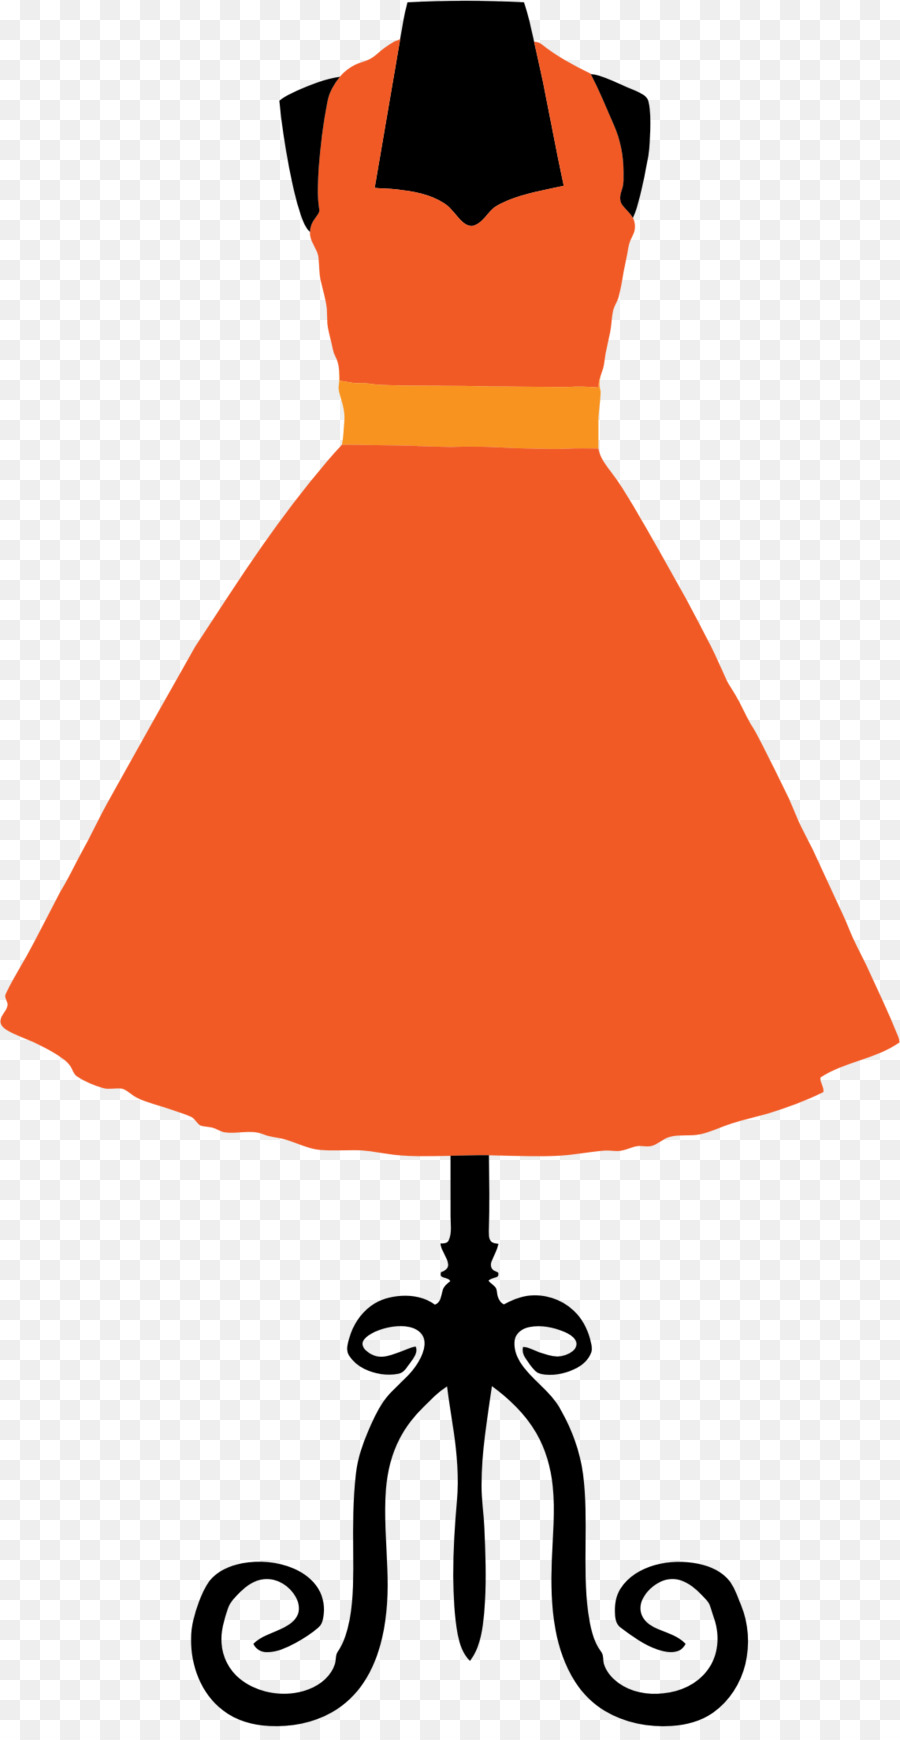 Dress Vintage clothing Clip art - Vintage Dresses Cliparts png download - 1142*2192 - Free Transparent Dress png Download.